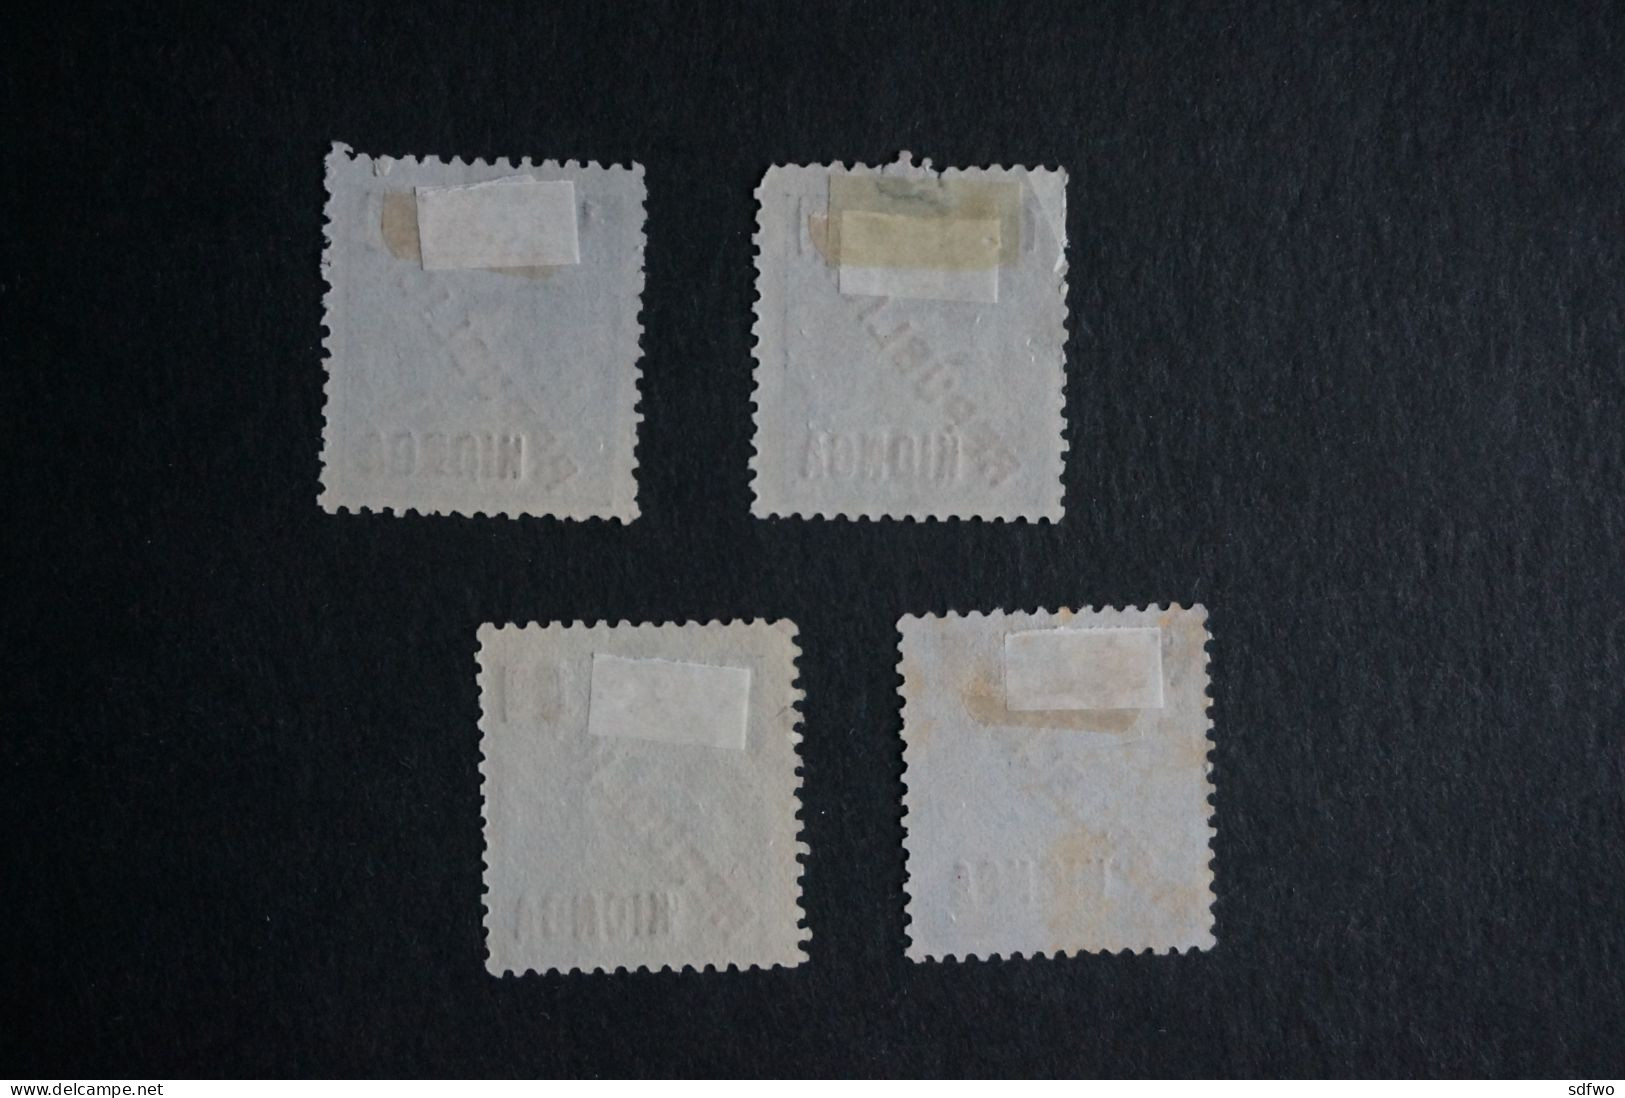 (T2) Kionga Stamps 1916 King Carlos - Af. 01 To 04 - Used - Kionga